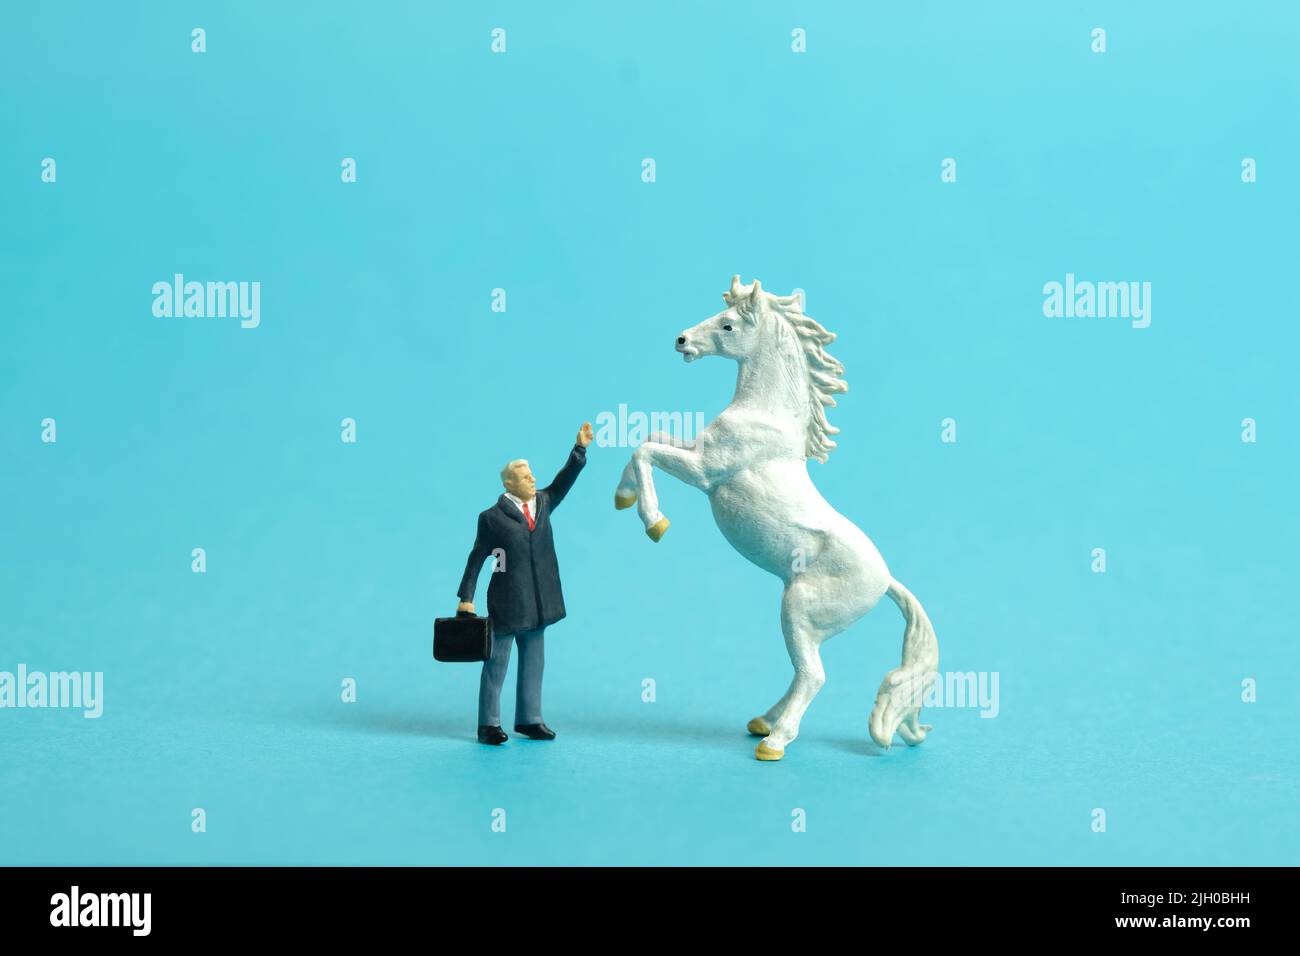 Fotografia di personaggi giocattolo in miniatura. Un uomo d'affari in piedi davanti a cavallo di prancing mentre alza la mano. Isolato su sfondo blu. ph dell'immagine Foto Stock